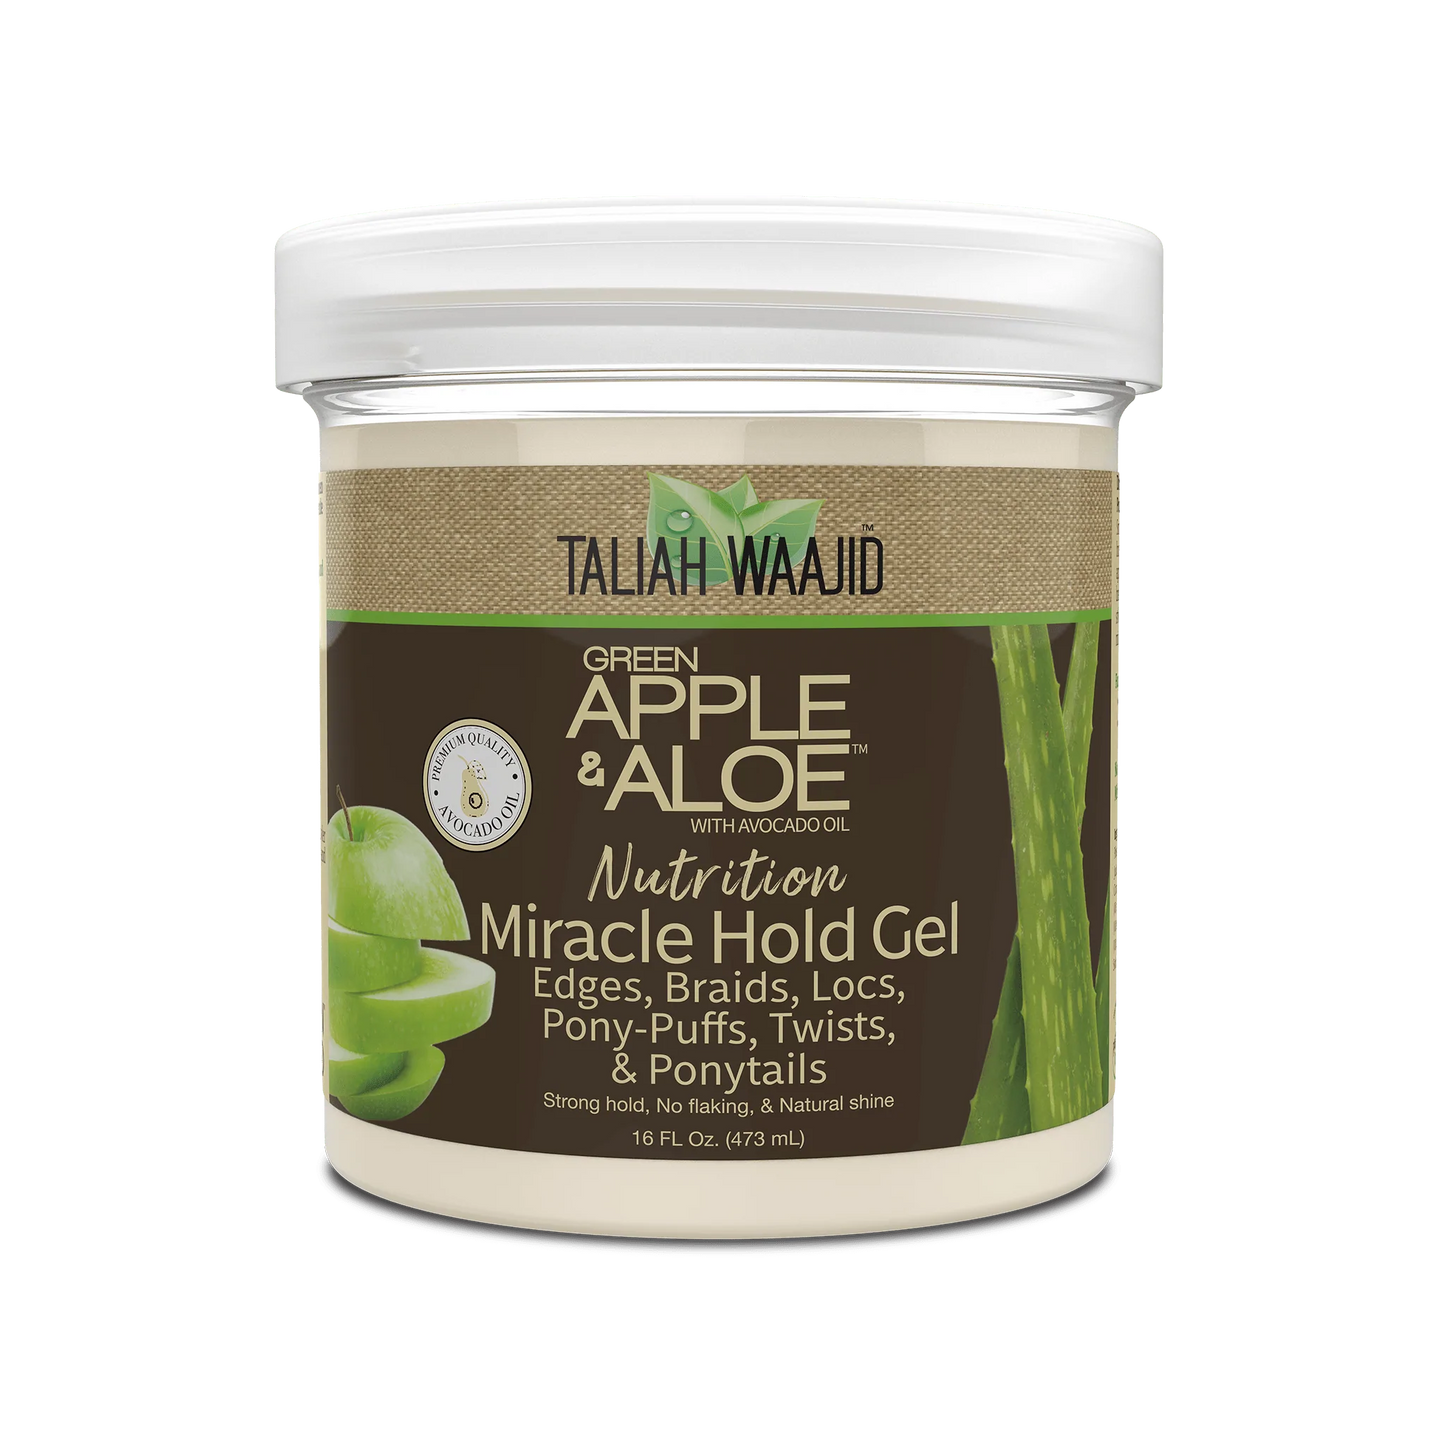 Taliah Waajid Apple & Aloe Nutrition Miracle Hold Gel